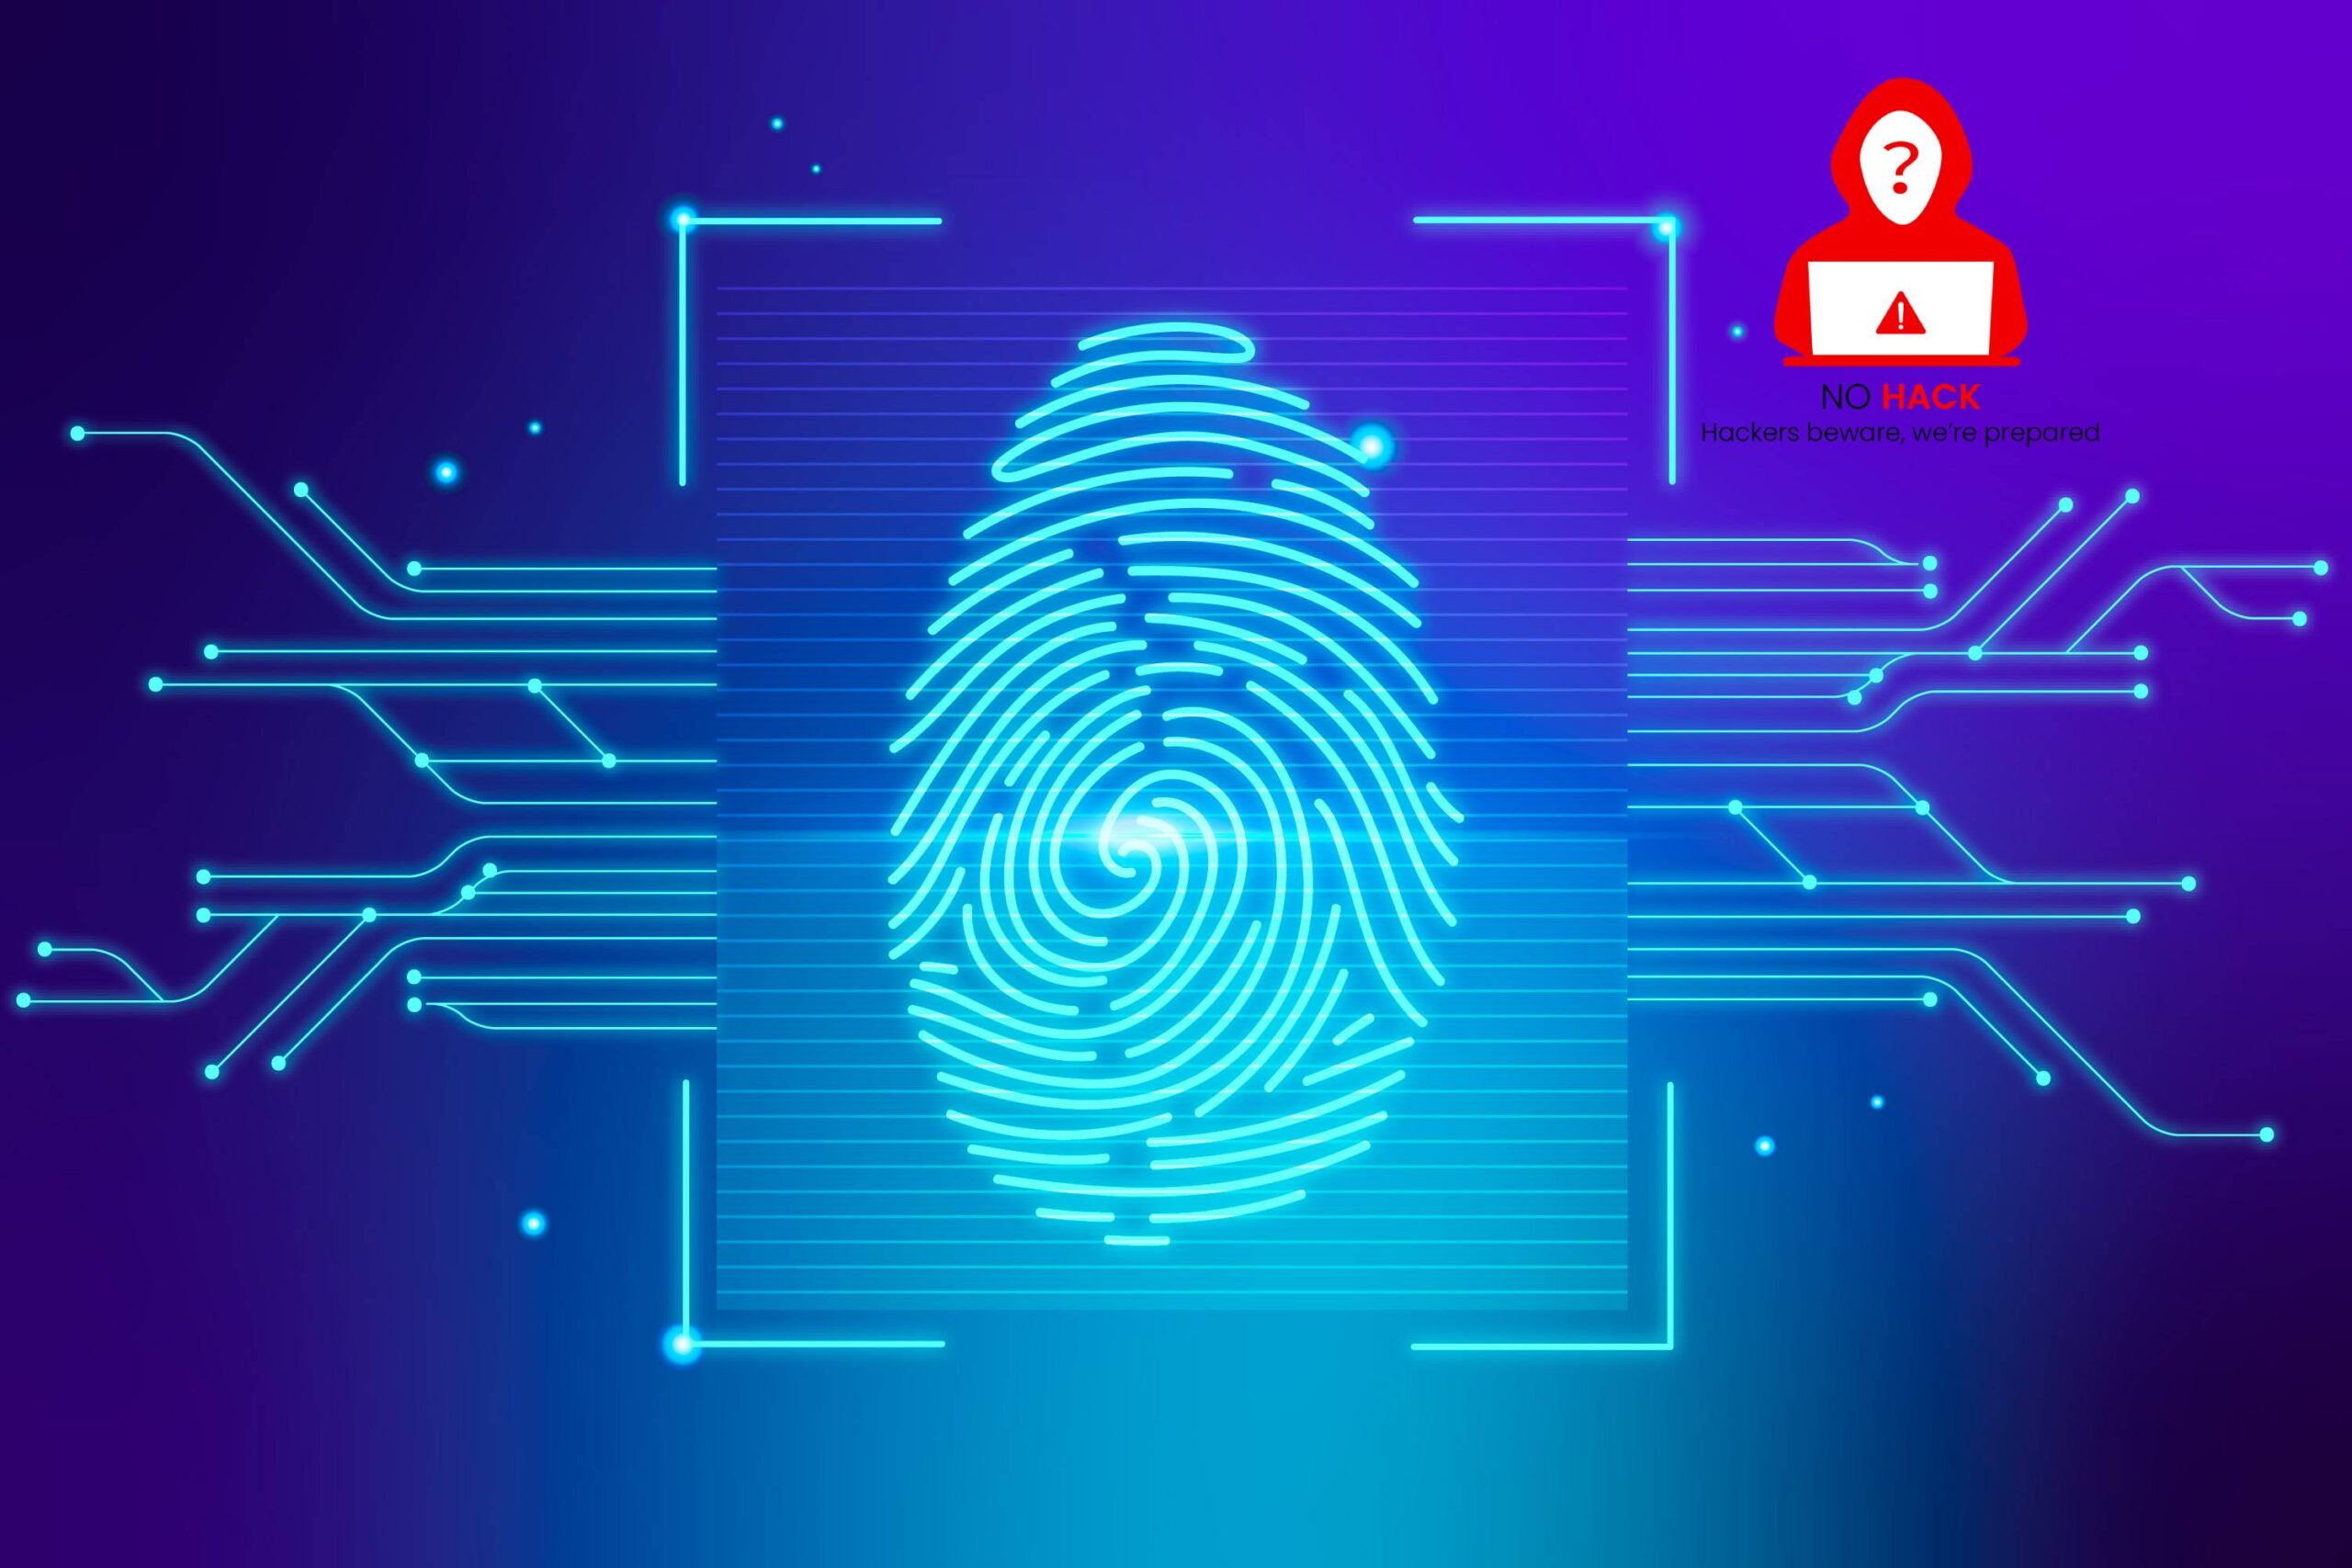 New flaws found in Fingerprint Sensors nohack